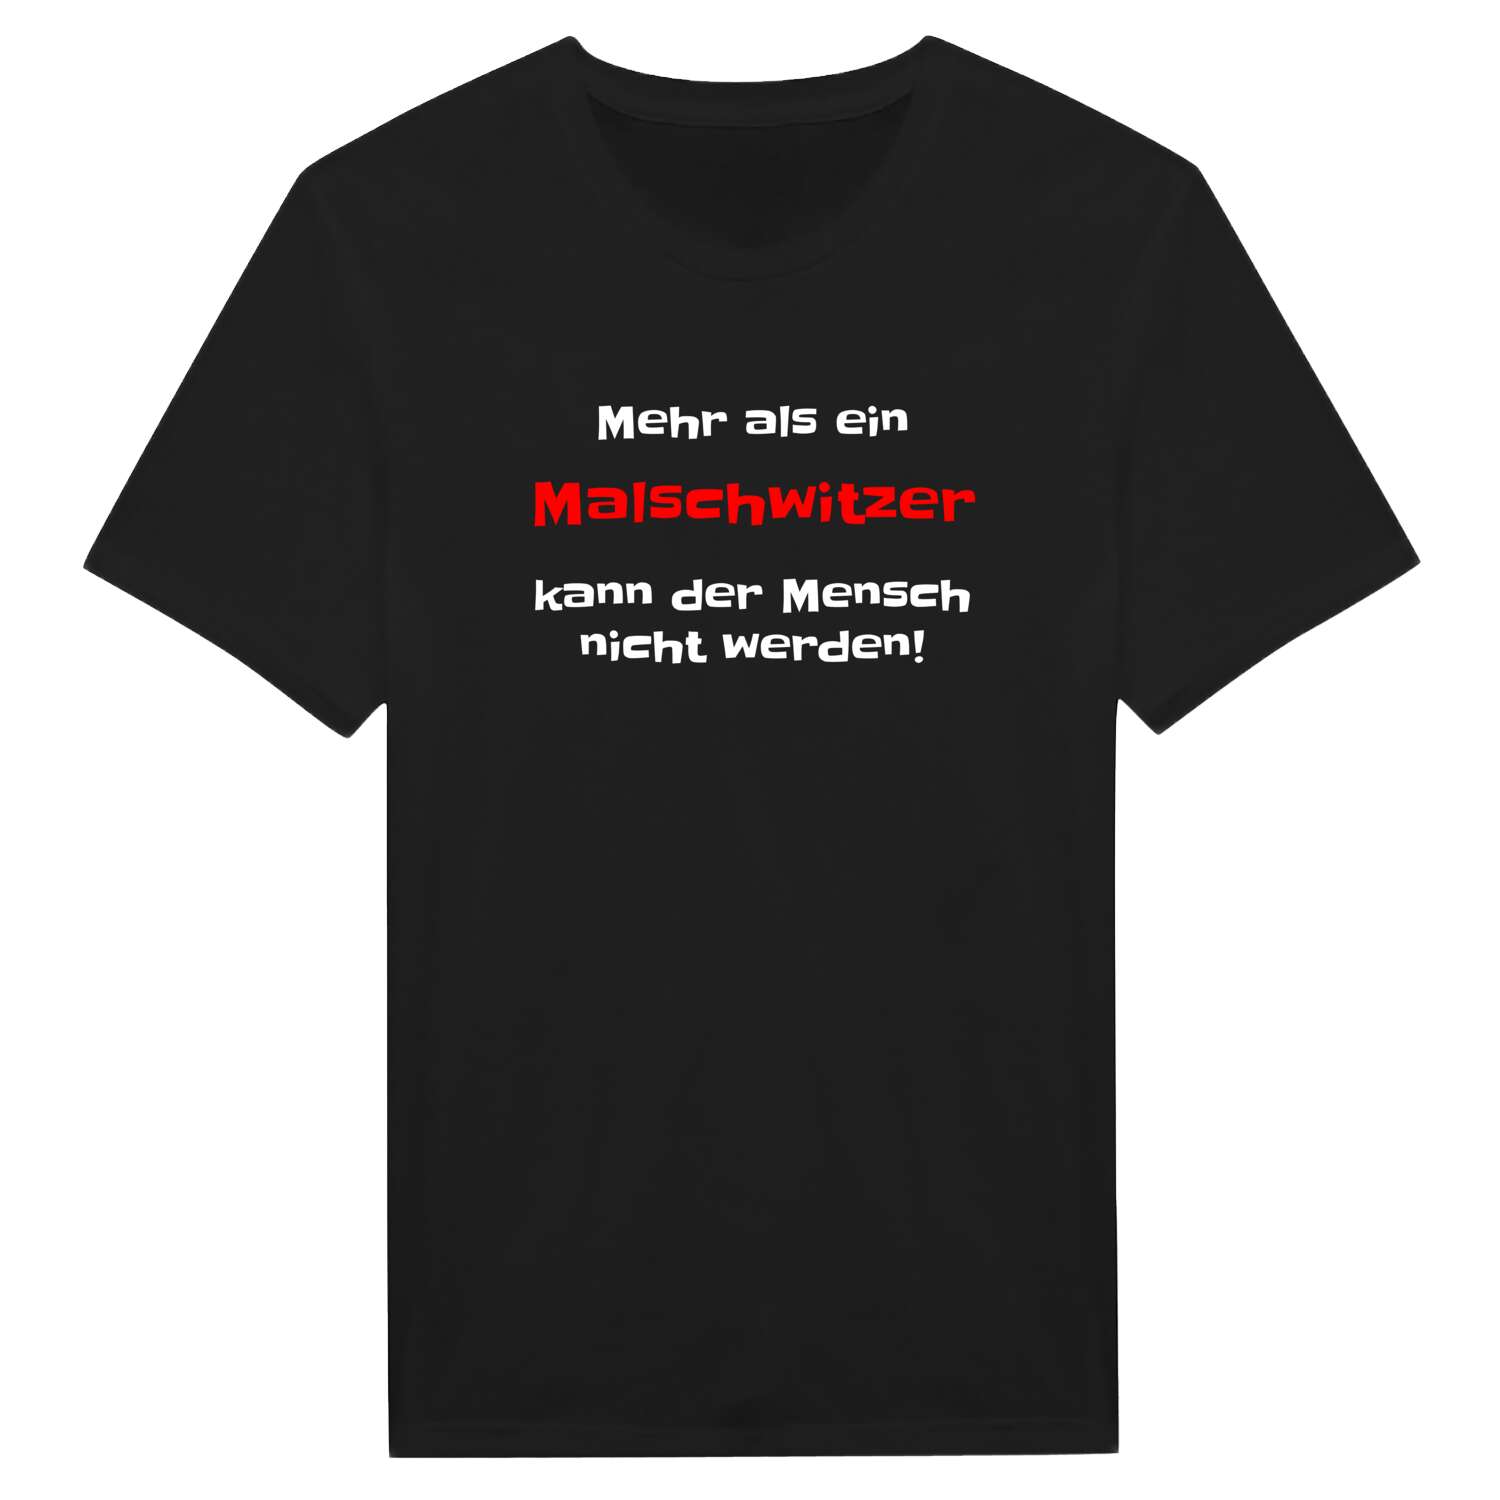 Malschwitz T-Shirt »Mehr als ein«